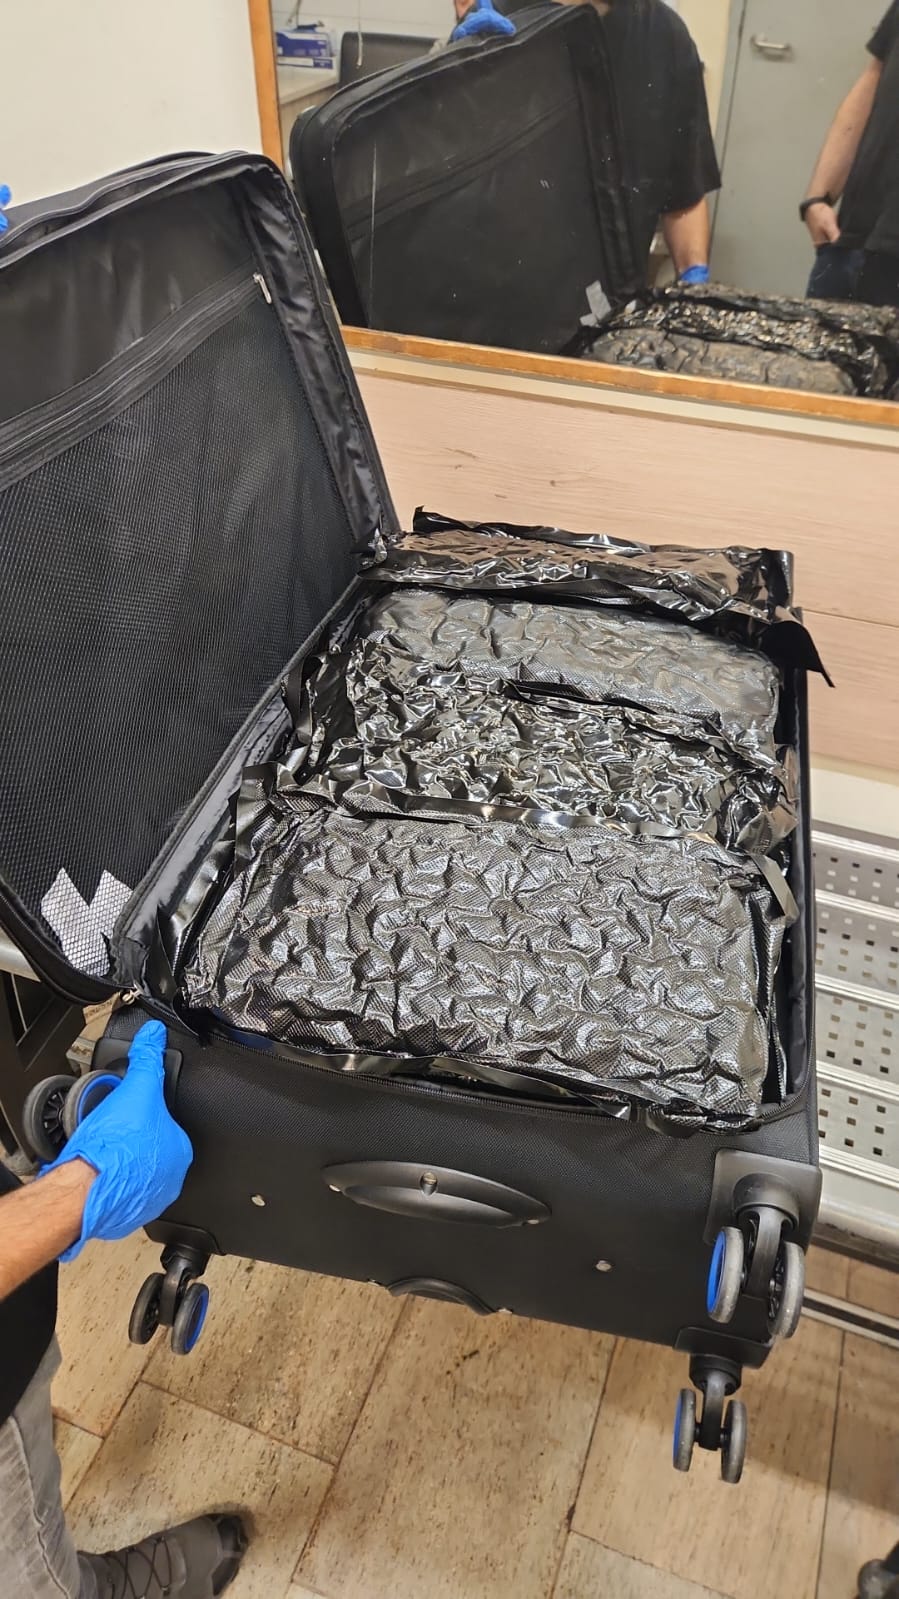 הפתעה במזוודה: תושב חולון נעצר בחשד שניסה להבריח כ-30 ק”ג סמים